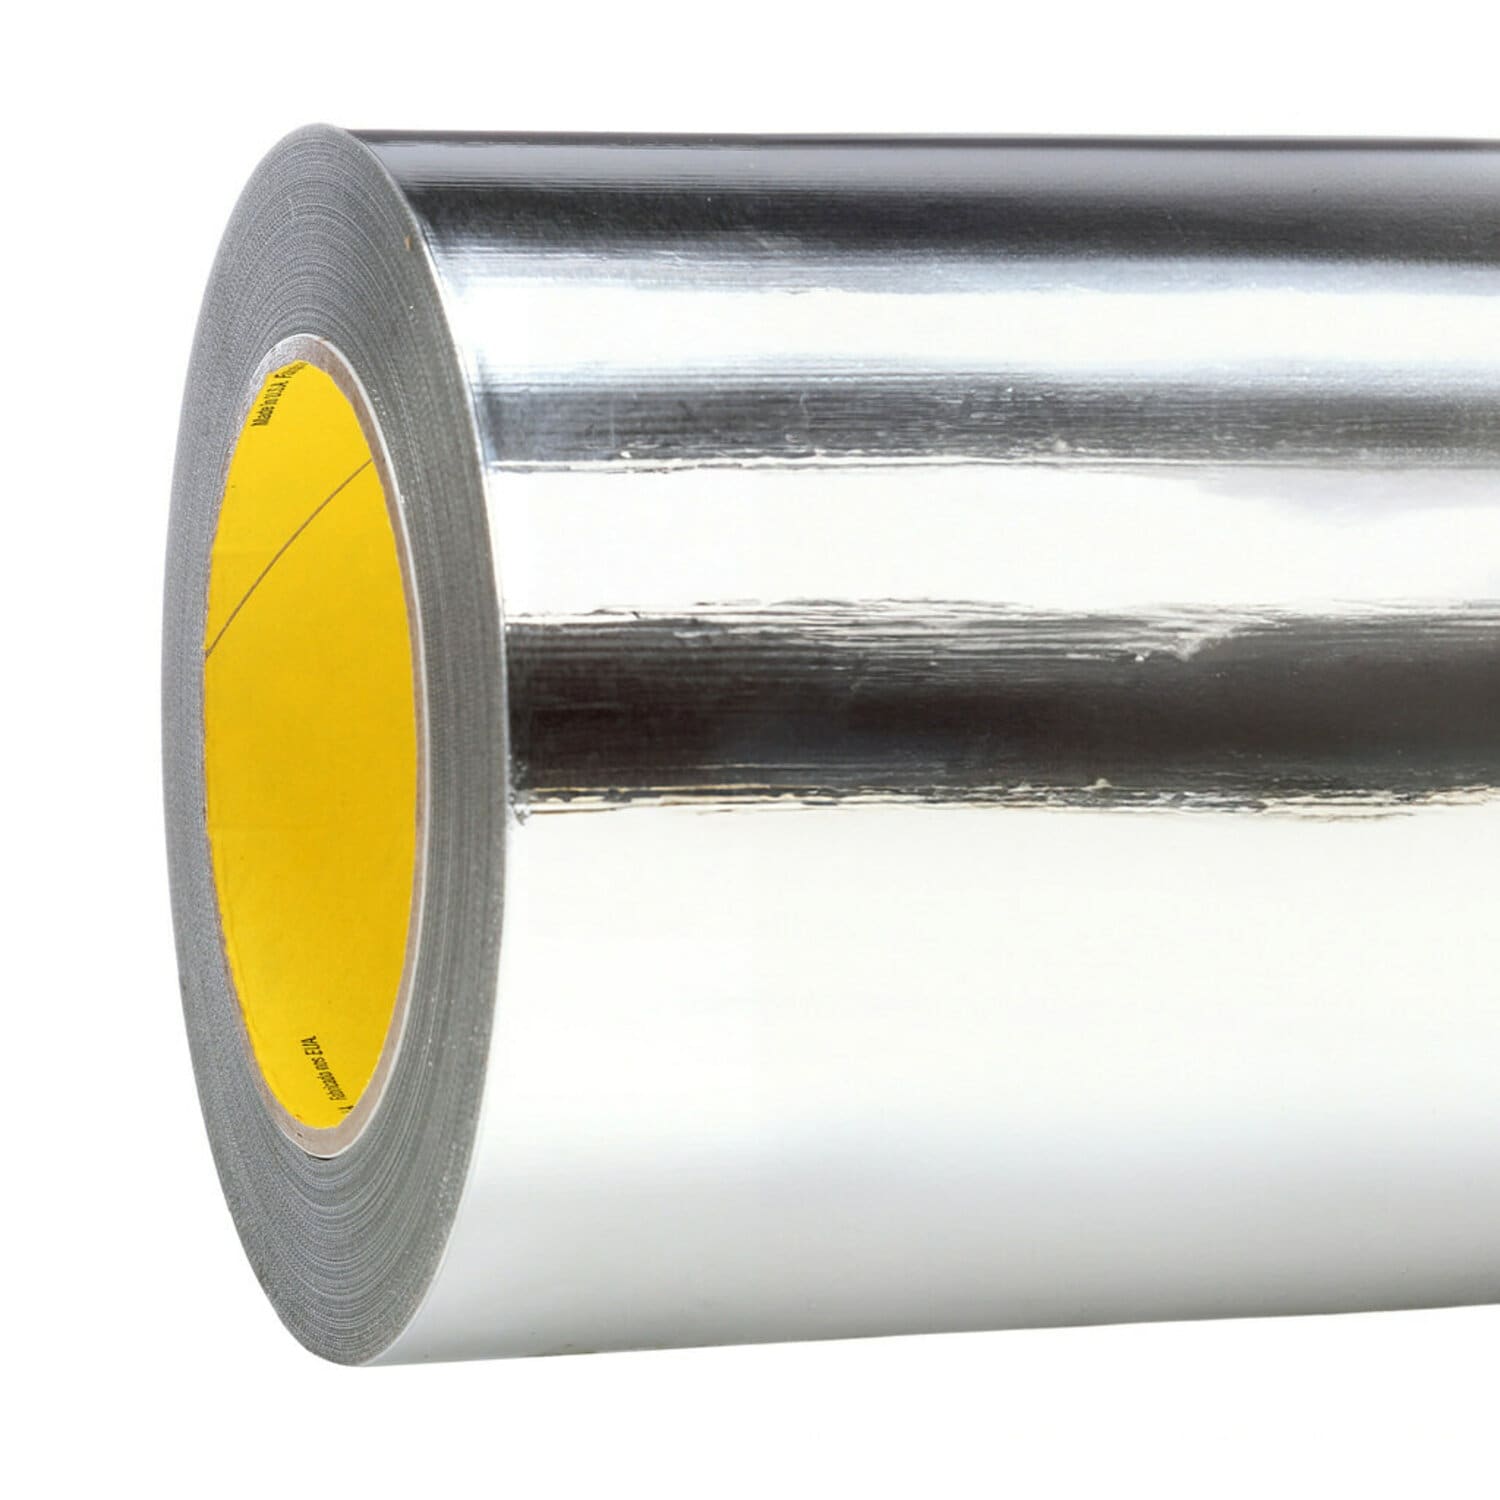 7010374399 - 3M High Temperature Aluminum Foil Tape 433, Silver, 23 in x 180 yd, 3.6
Mil, 1/Case